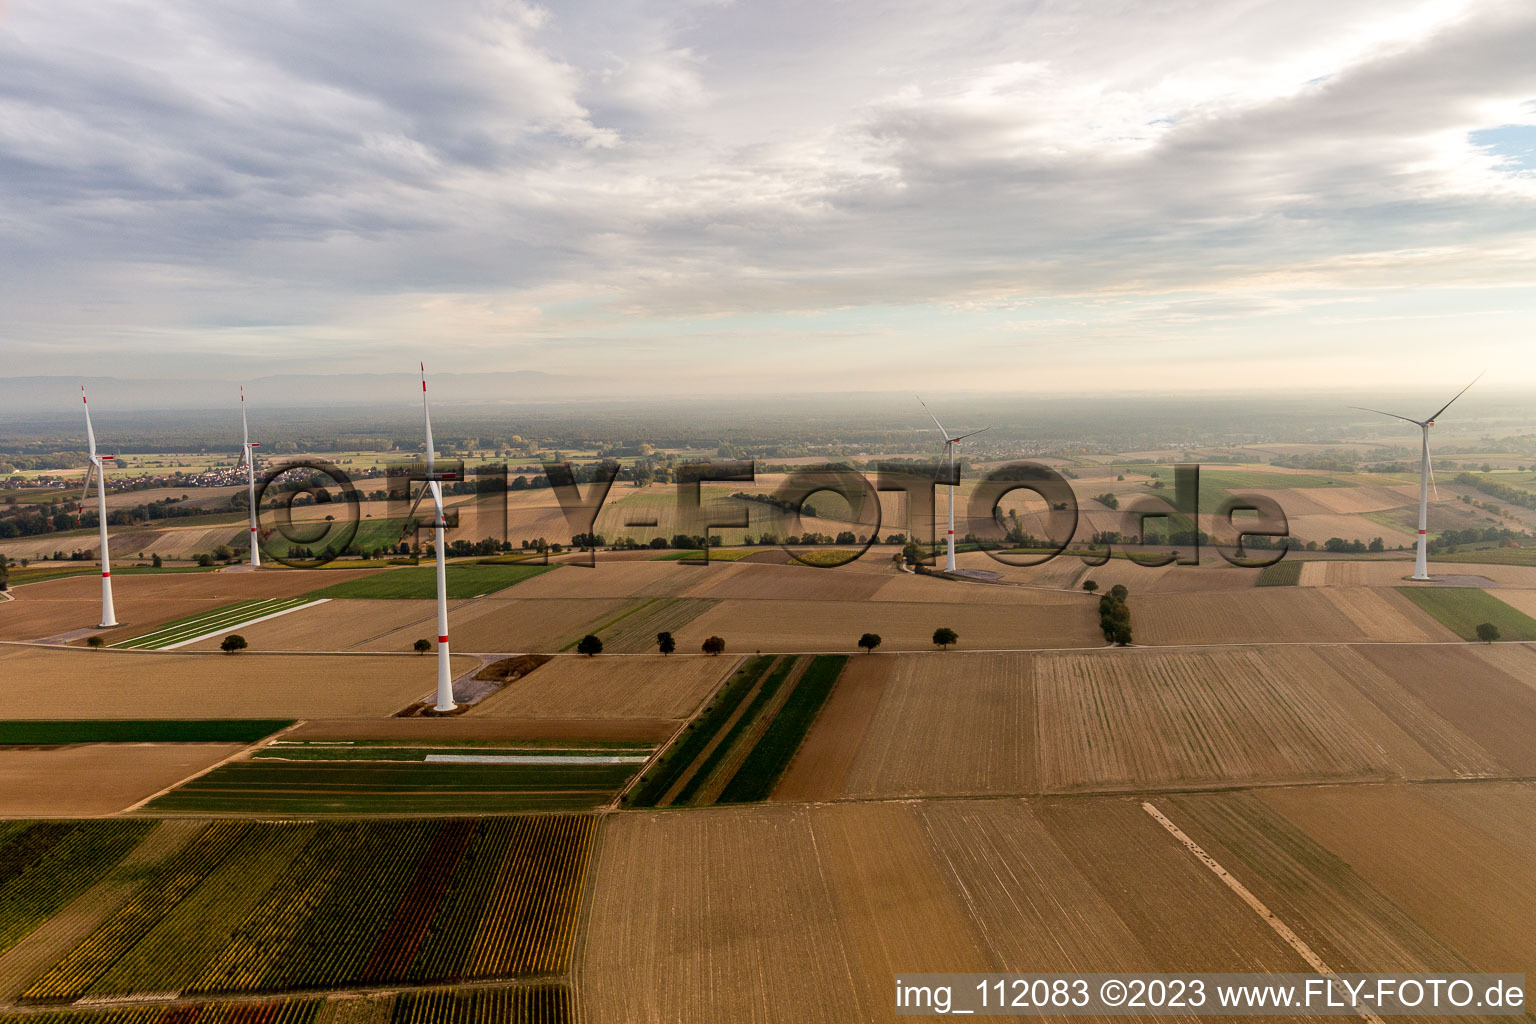 Parc éolien EnBW - éolienne avec 6 éoliennes à Freckenfeld dans le département Rhénanie-Palatinat, Allemagne vu d'un drone